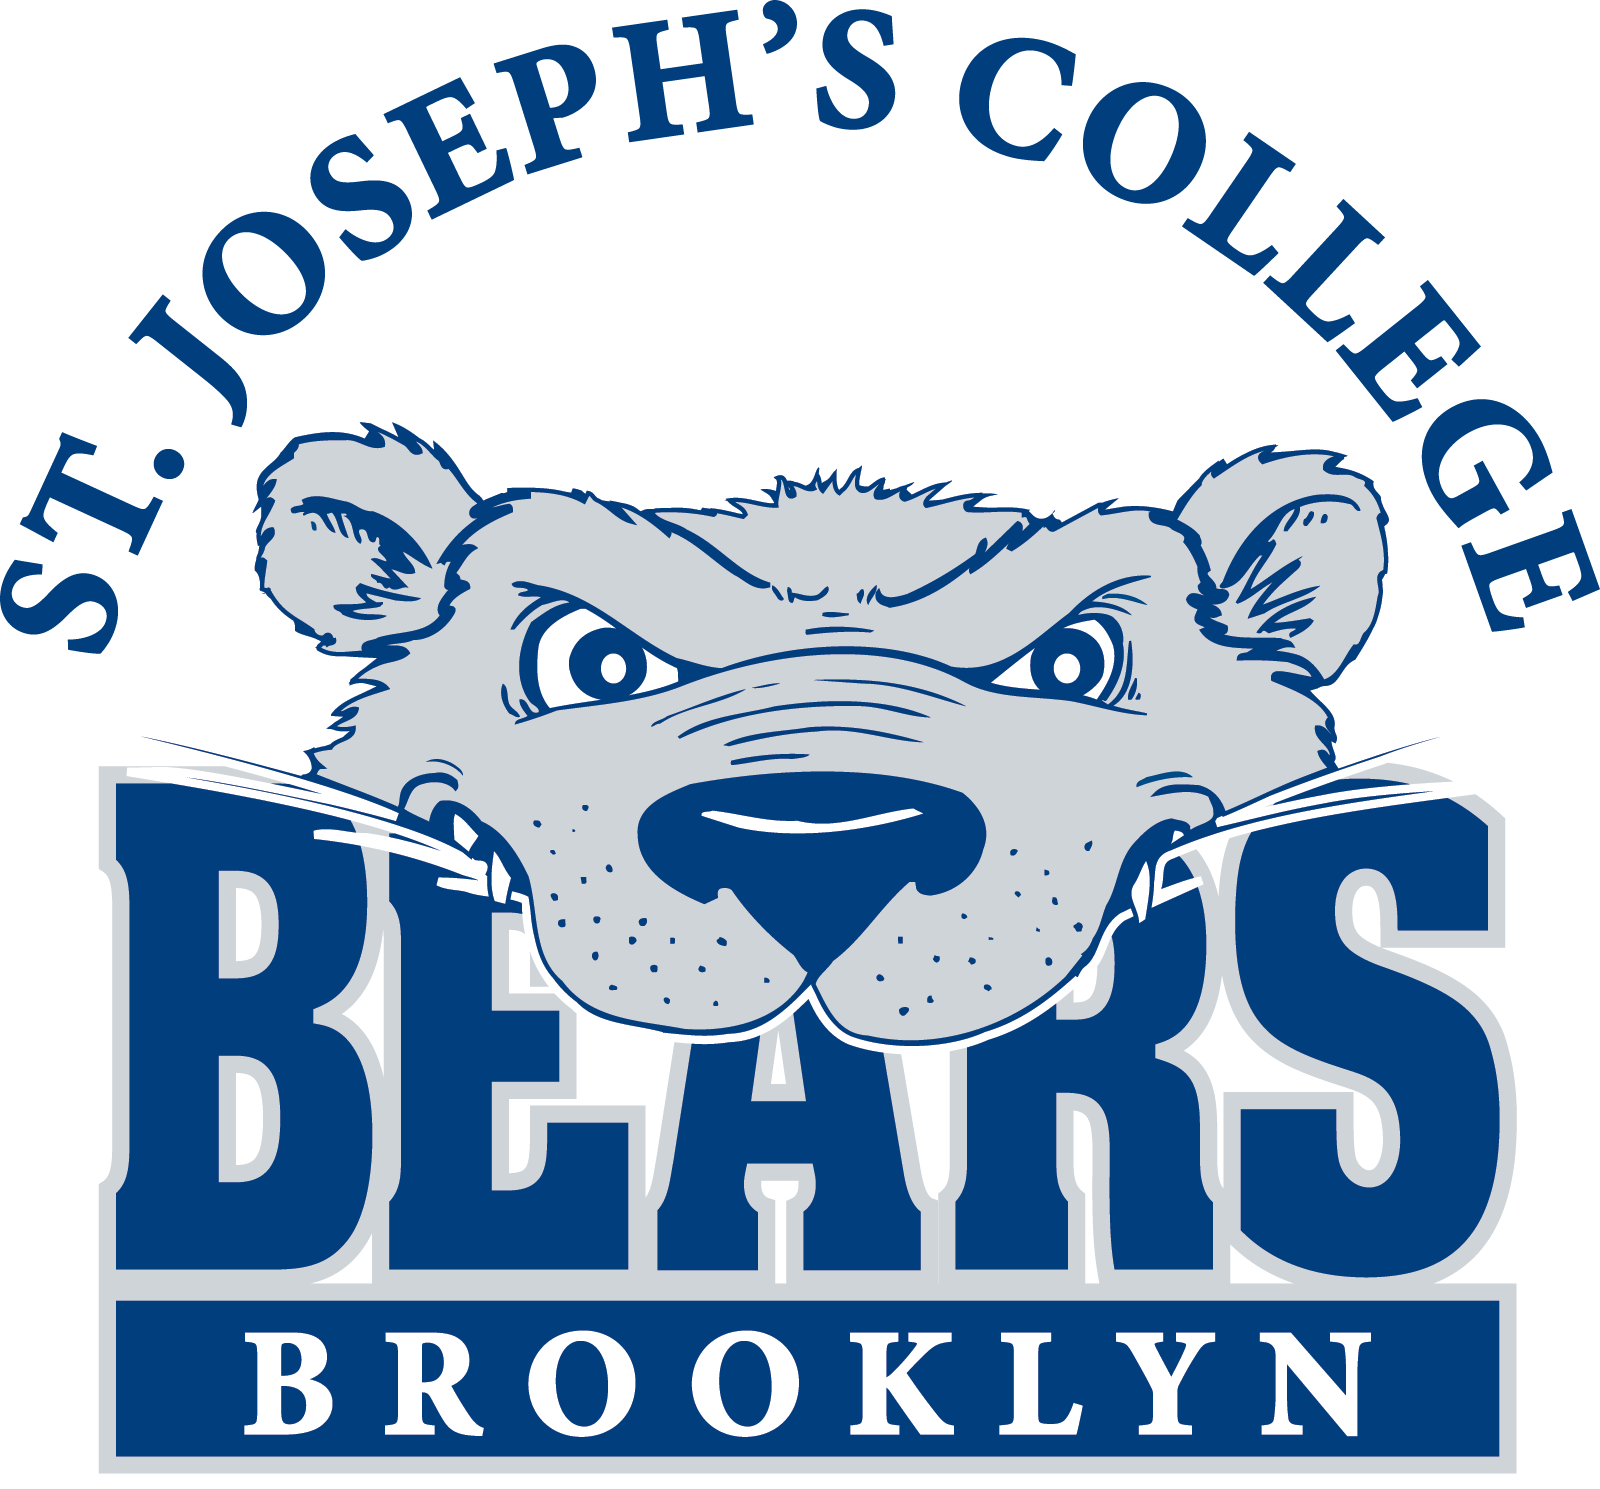 SJC Brooklyn logo